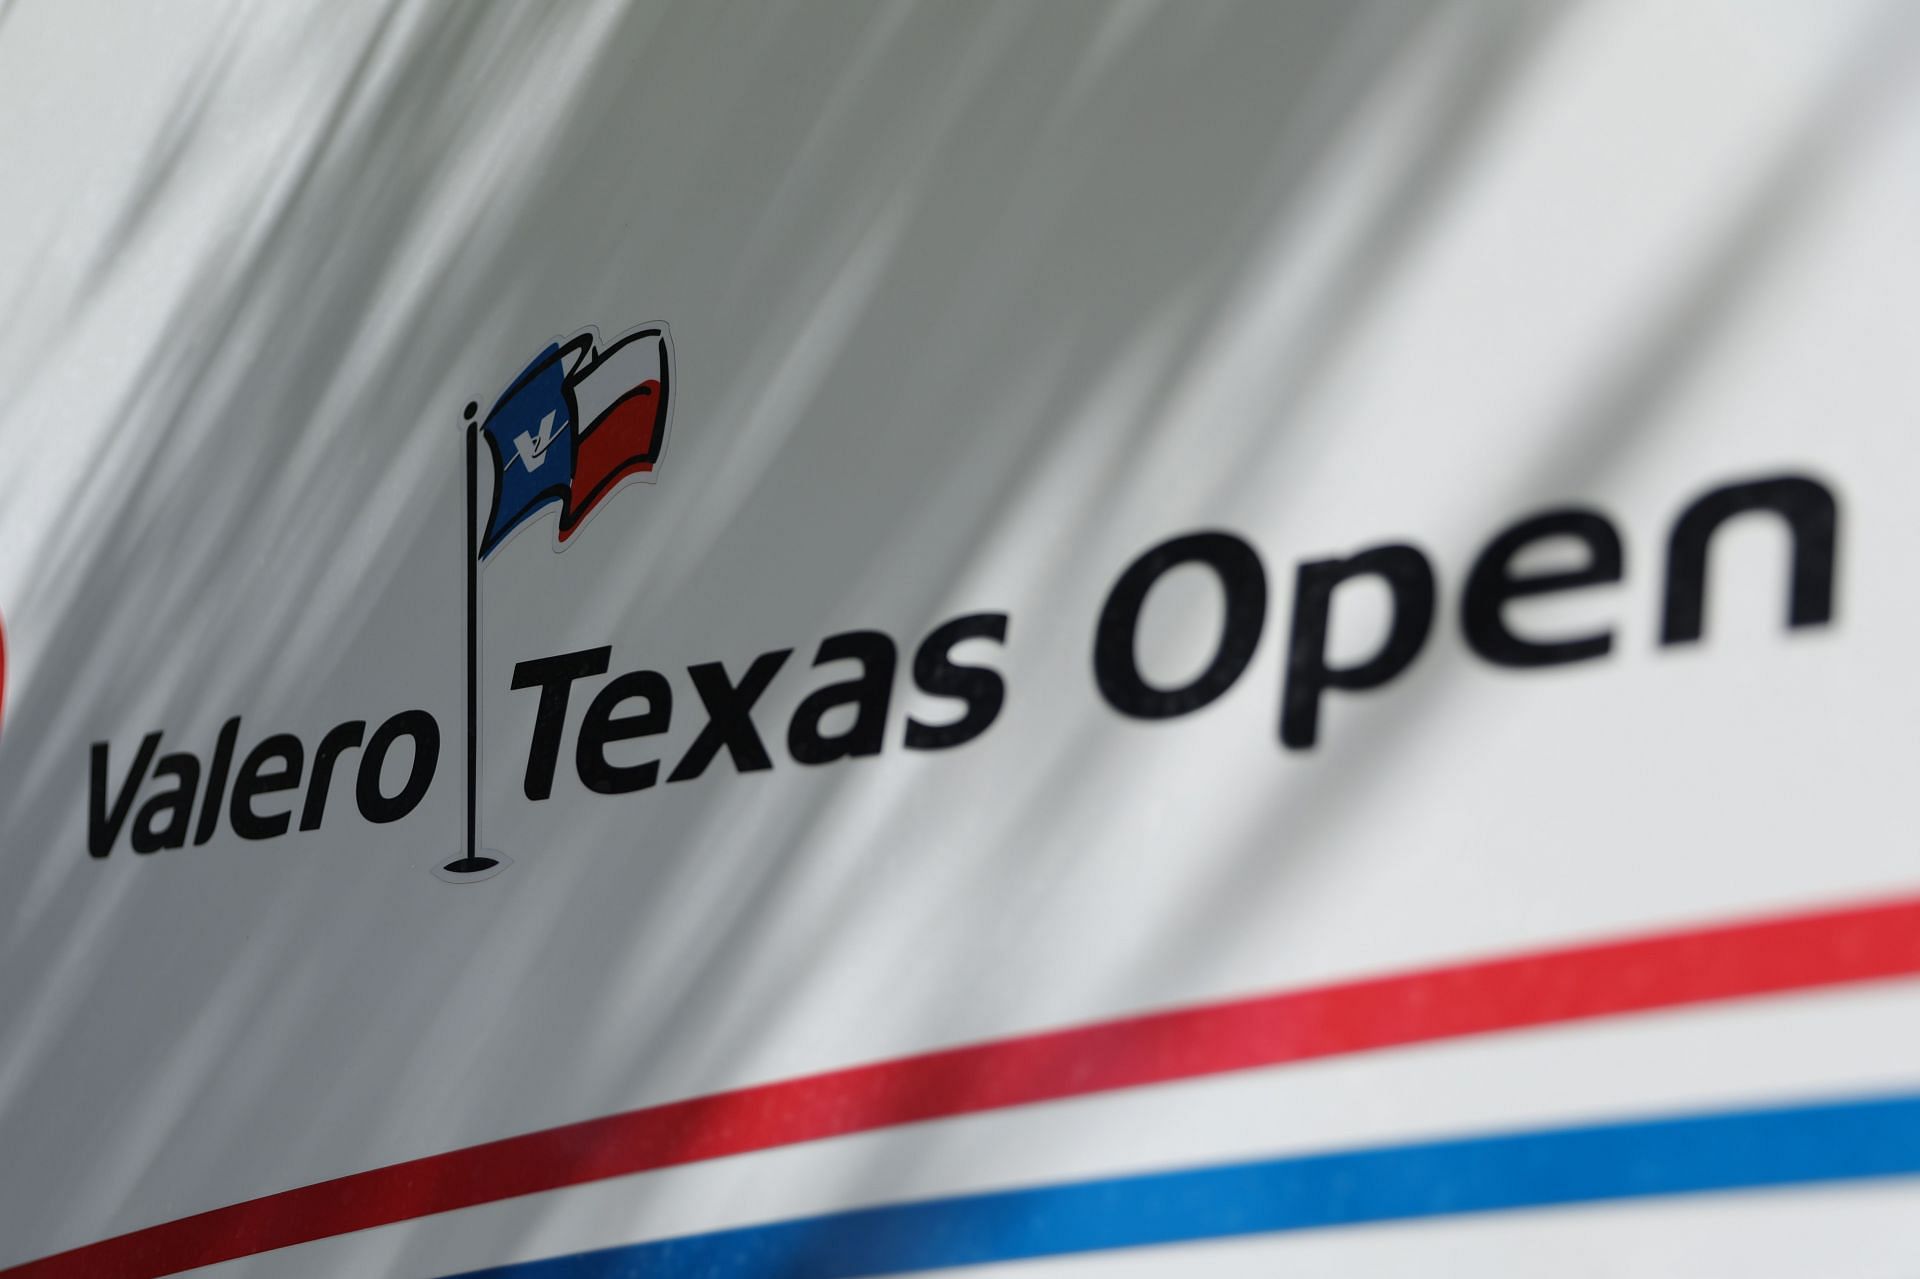 Valero Texas Open - Previews